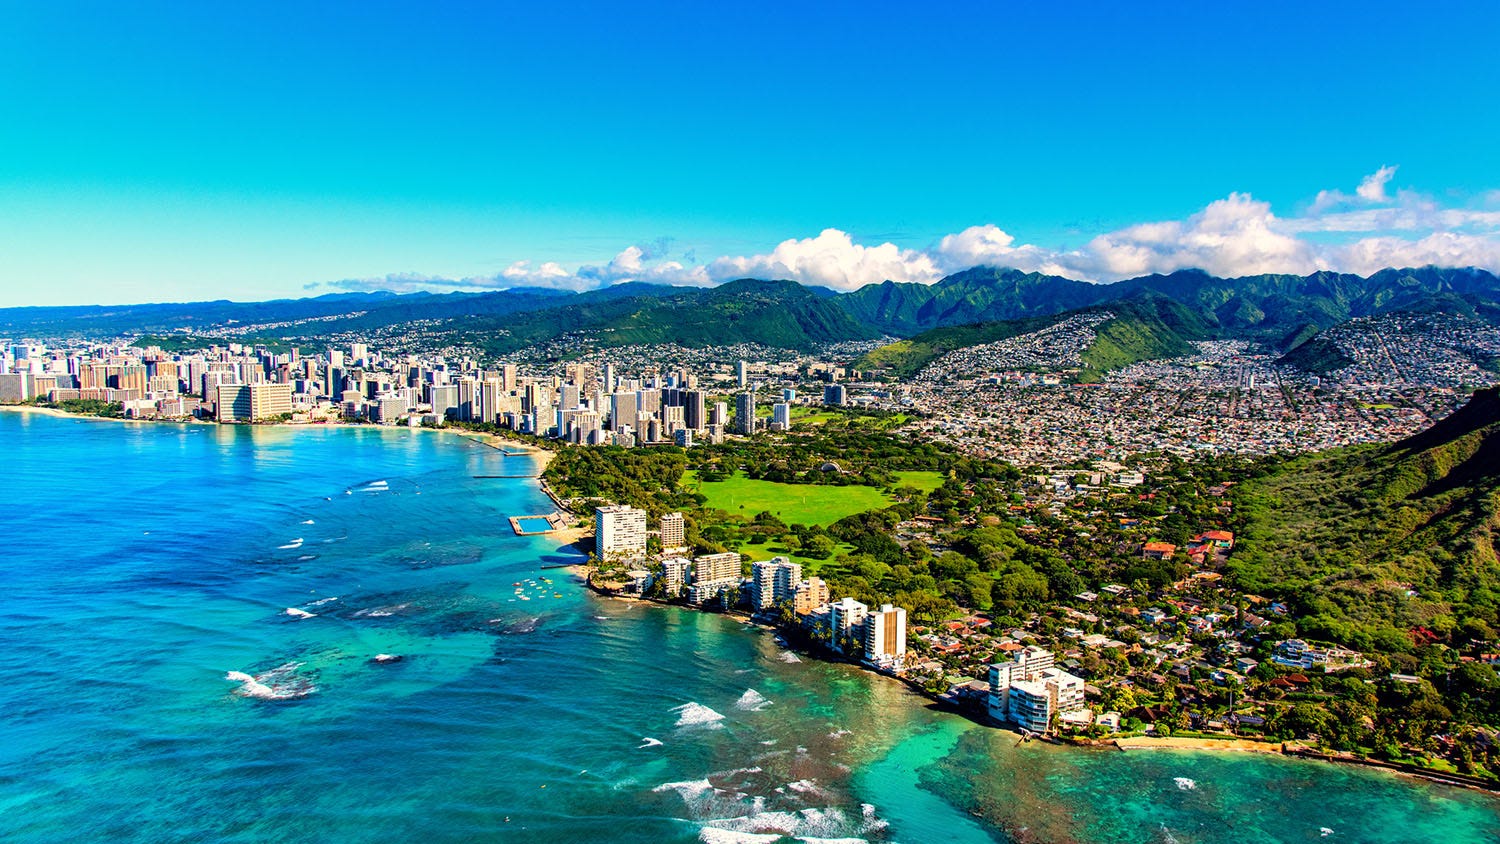 Hawaii gets tourism increase as coronavirus rules weaken